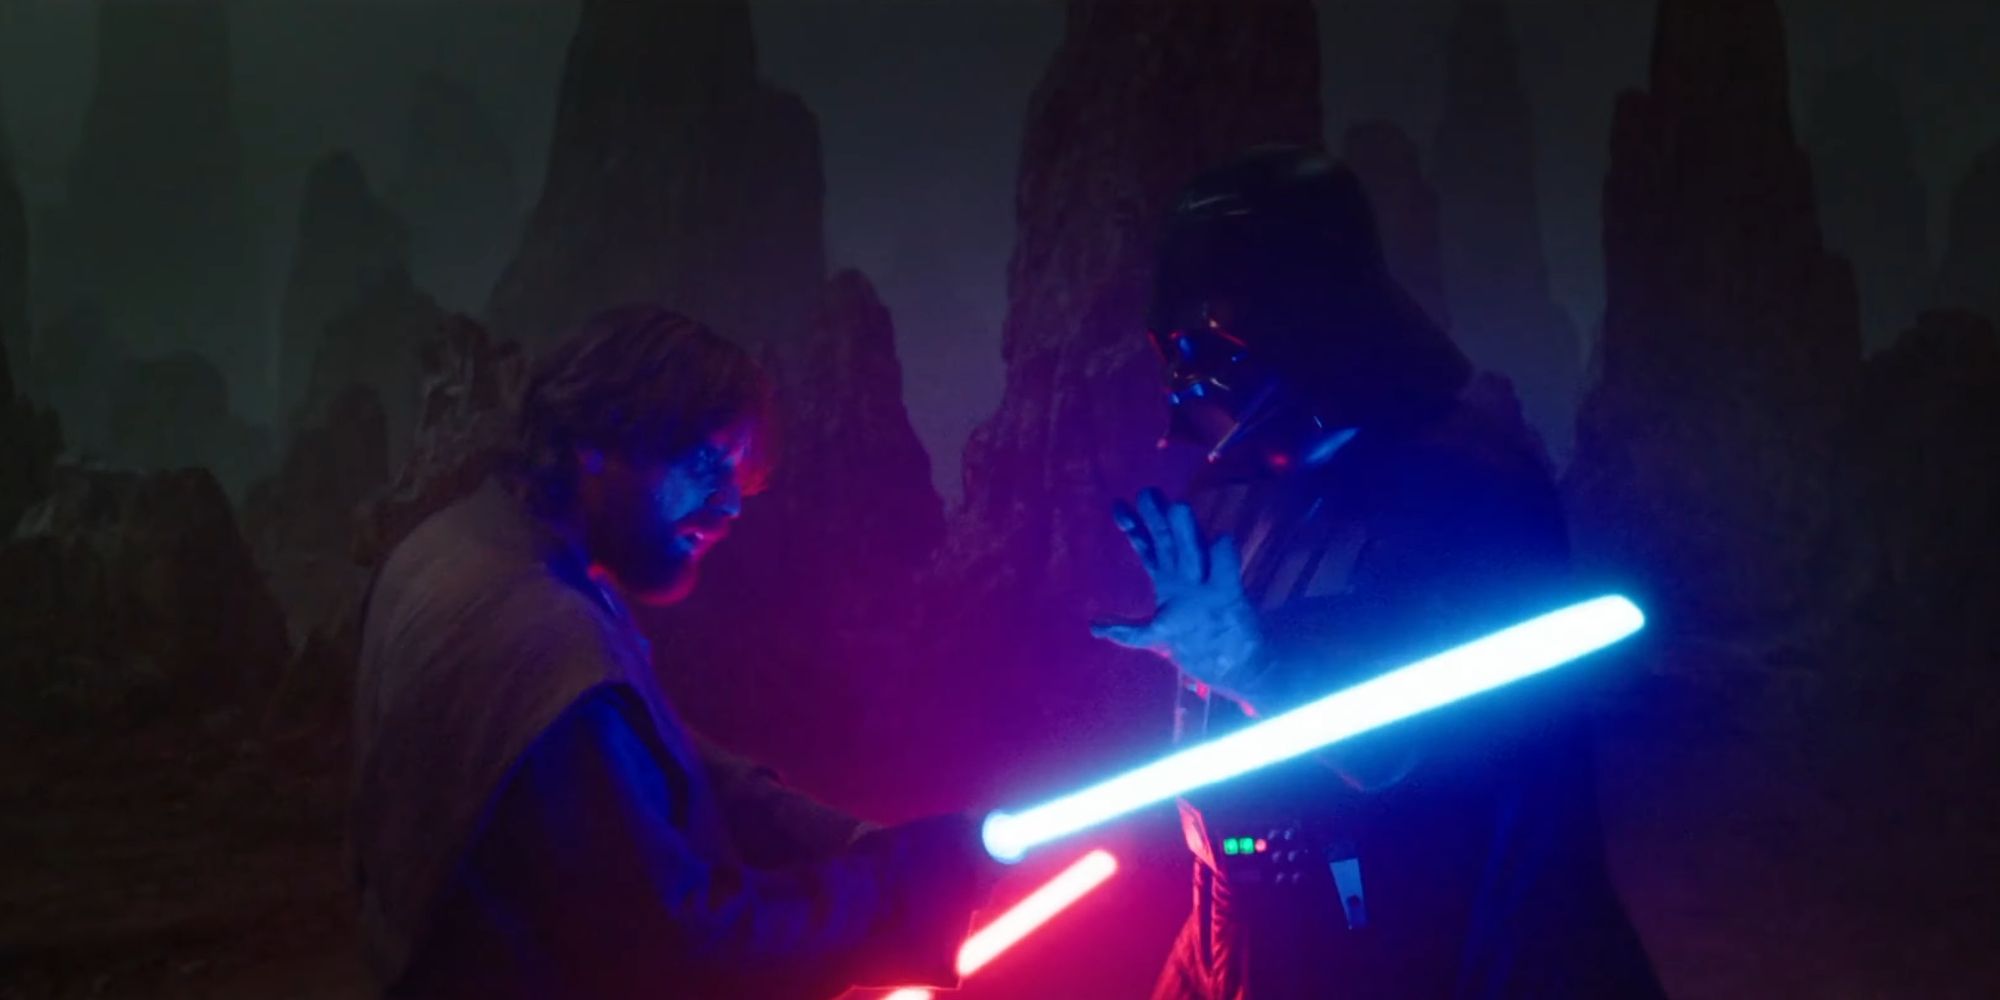 Darth Vader stopping Obi-Wan's lightsaber in Obi-Wan Kenobi